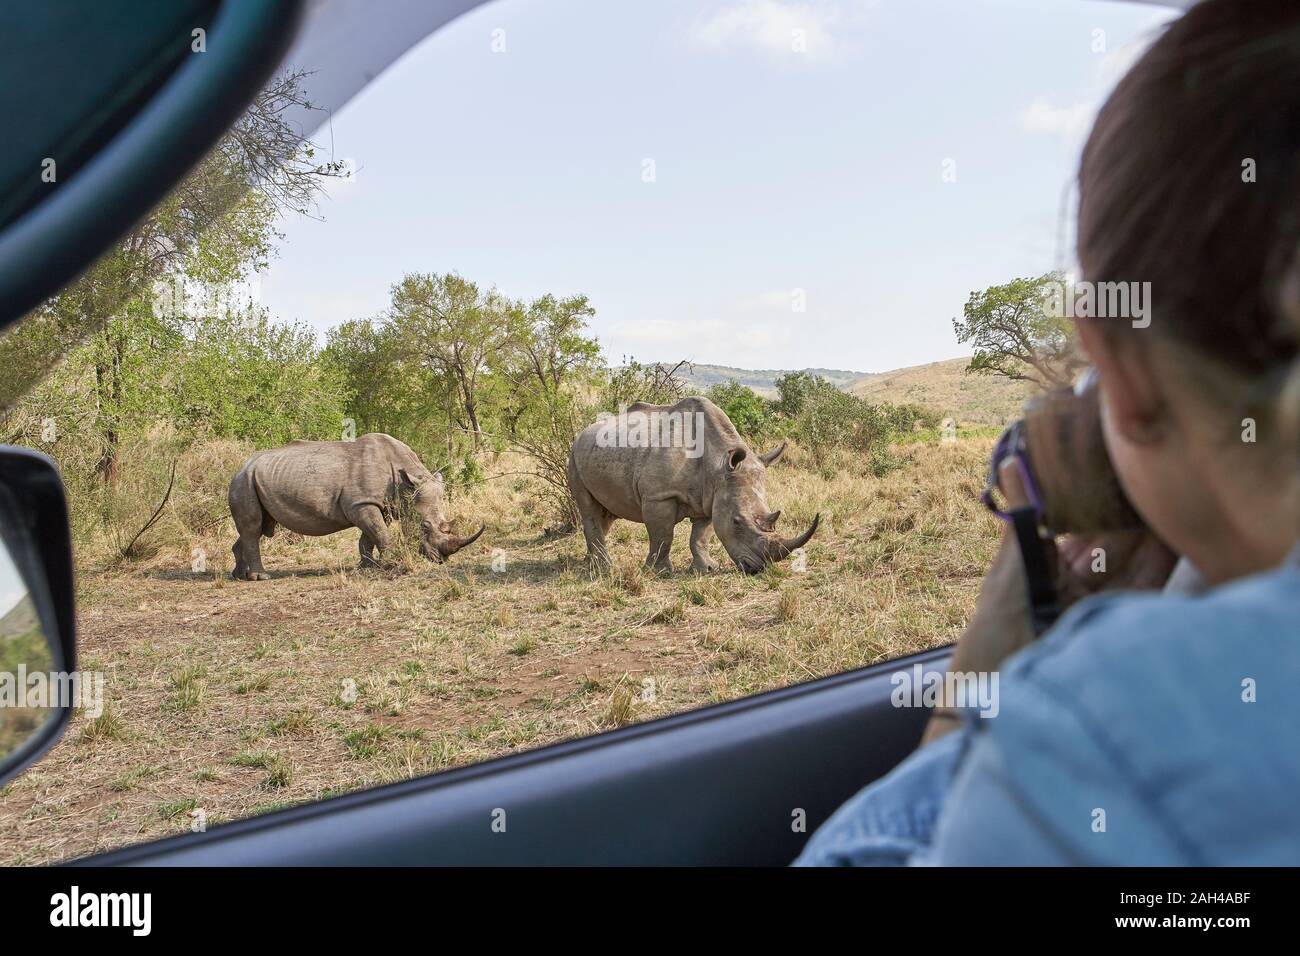 Donna di scattare una foto di un rinoceronti al di fuori della finestra di auto, Hluhluwe-Imfolozi Park, Sud Africa Foto Stock